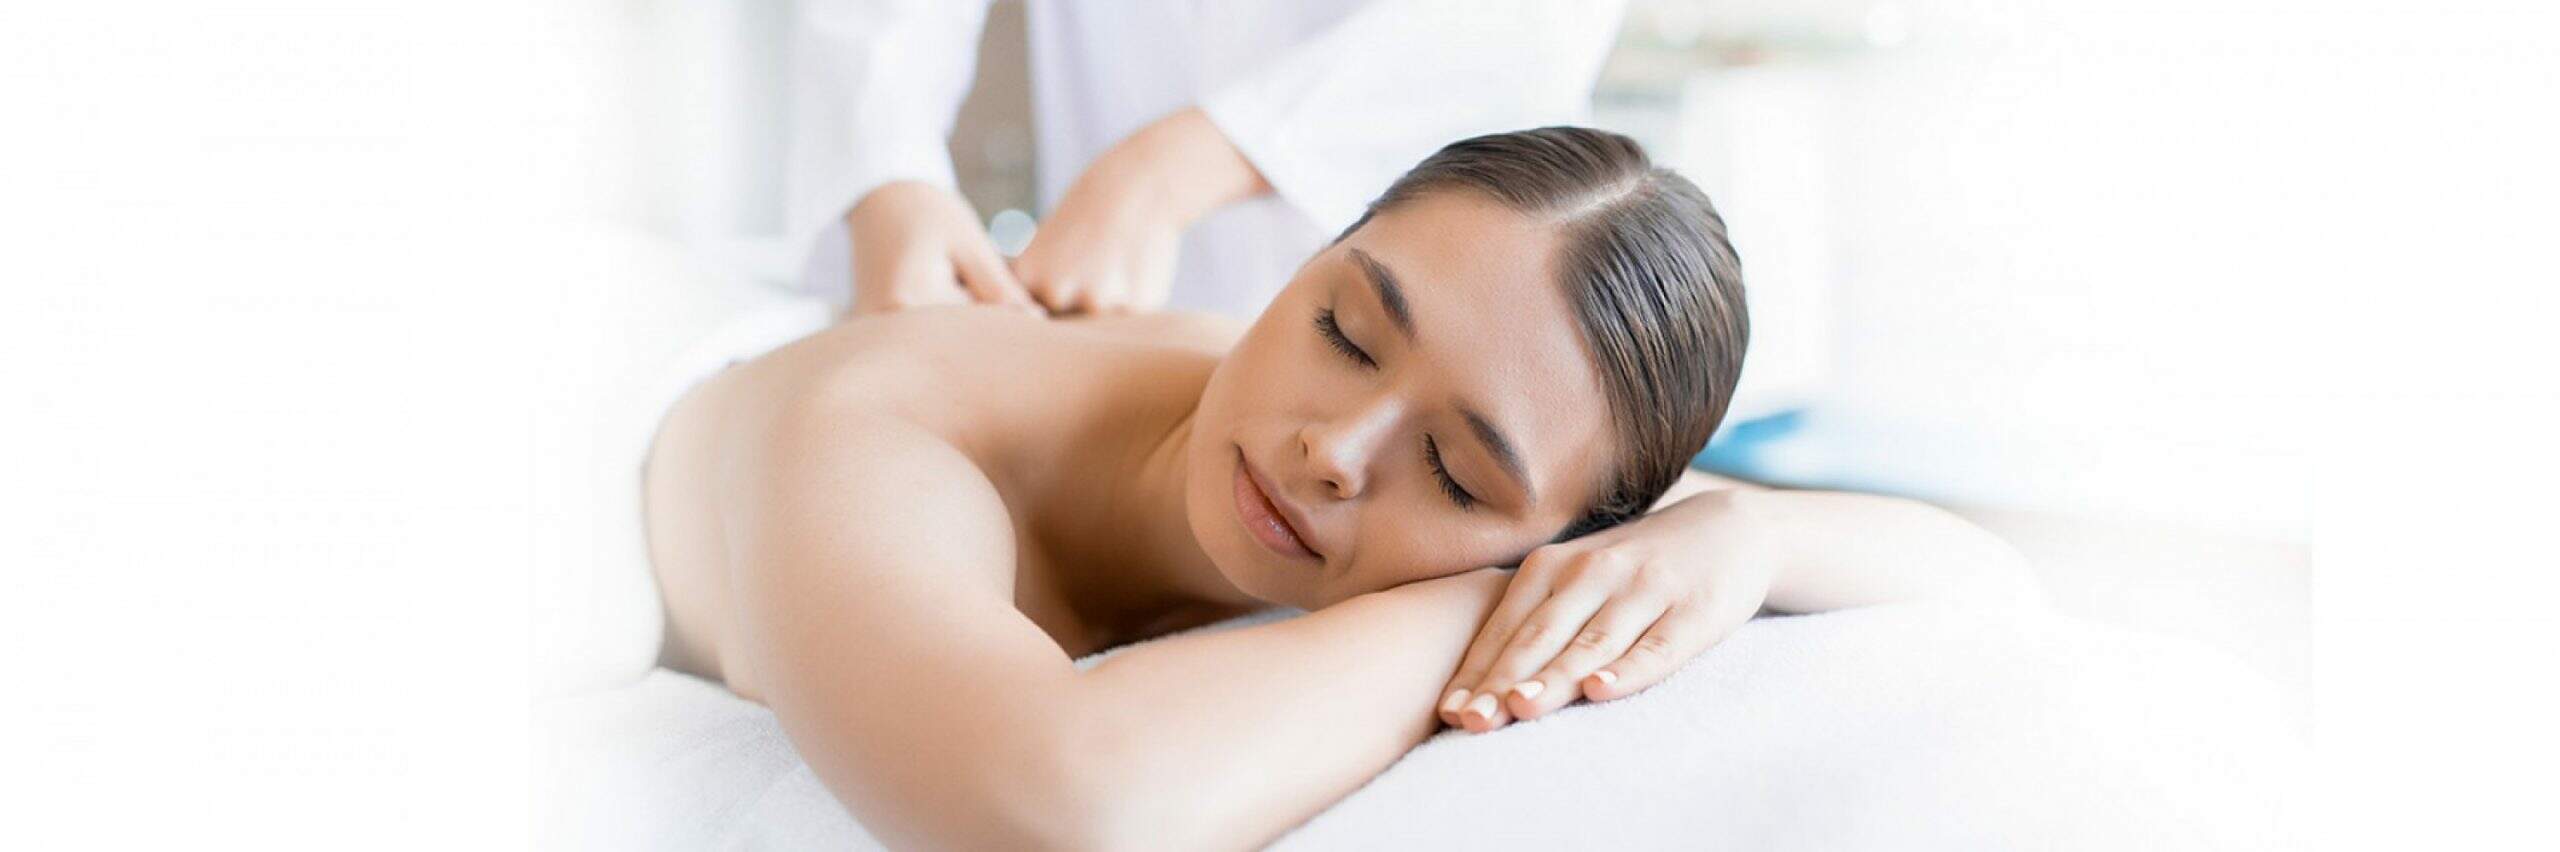 Servidores do TRT11 recebem Quick Massage na IV Semana de Saúde - Momento de relaxamento e bem-estar tem vagas limitadas. Servidor deve agendar previamente online.